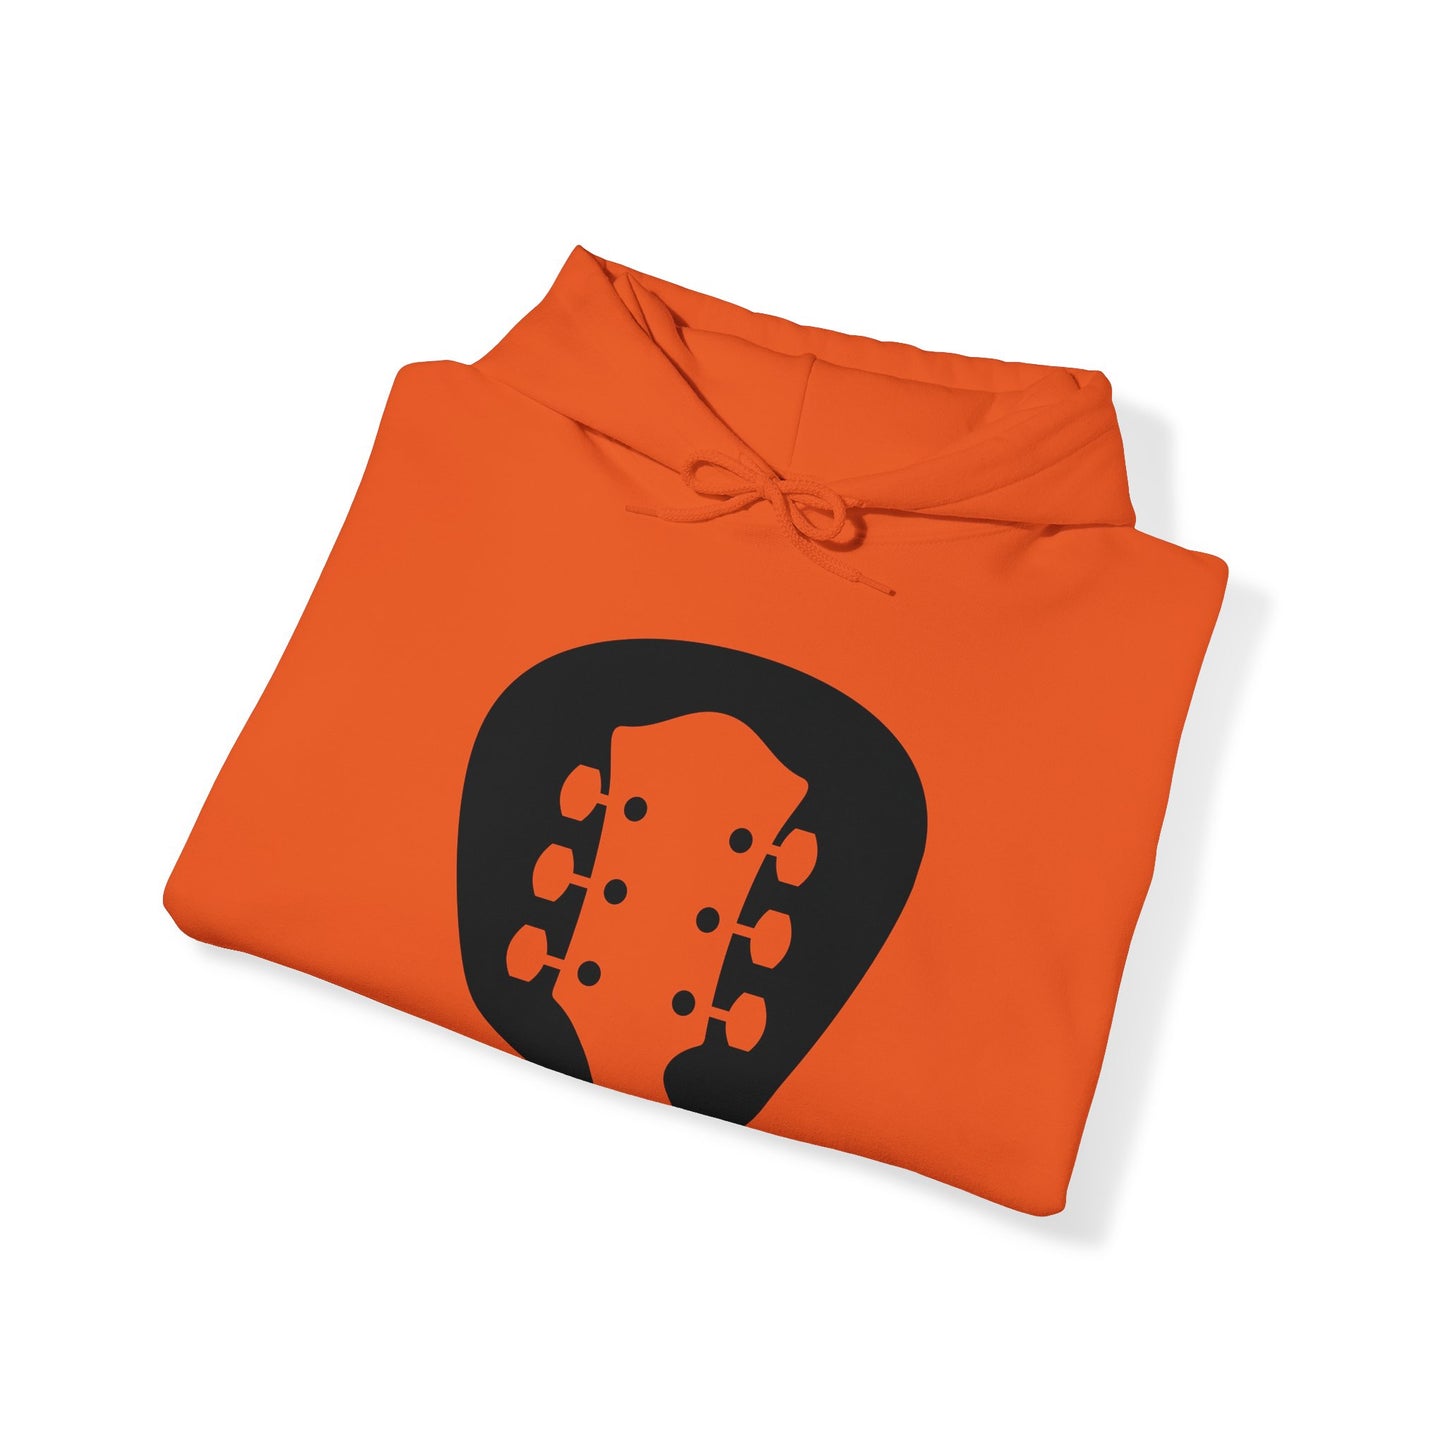 Headstock Hoodie With Guitar Pick Hooded Sweatshirt For Musician Sweatshirt For Music Shirt For Guitar Player Hoodie For Live Music Shirt For Guitar Player Gifts For Musician Gift